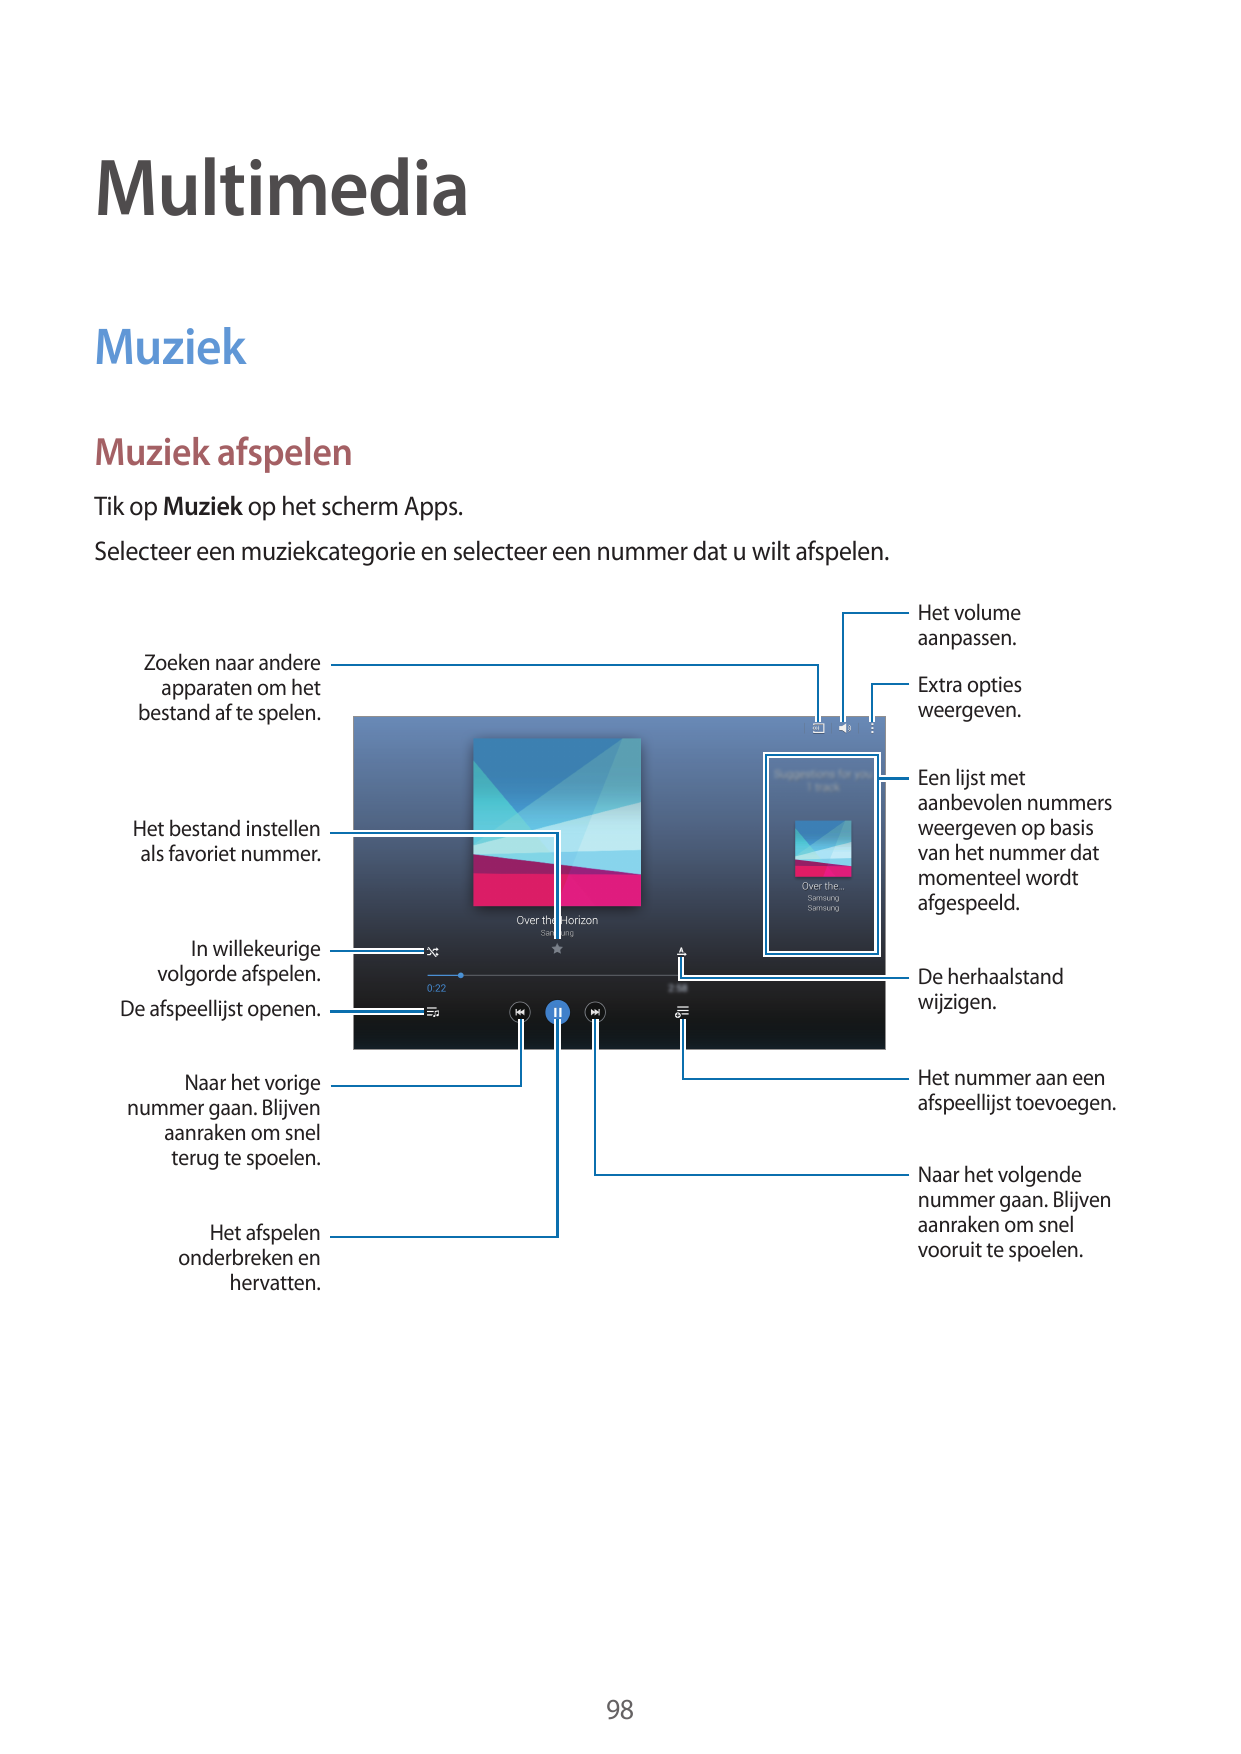 MultimediaMuziekMuziek afspelenTik op Muziek op het scherm Apps.Selecteer een muziekcategorie en selecteer een nummer dat u wilt